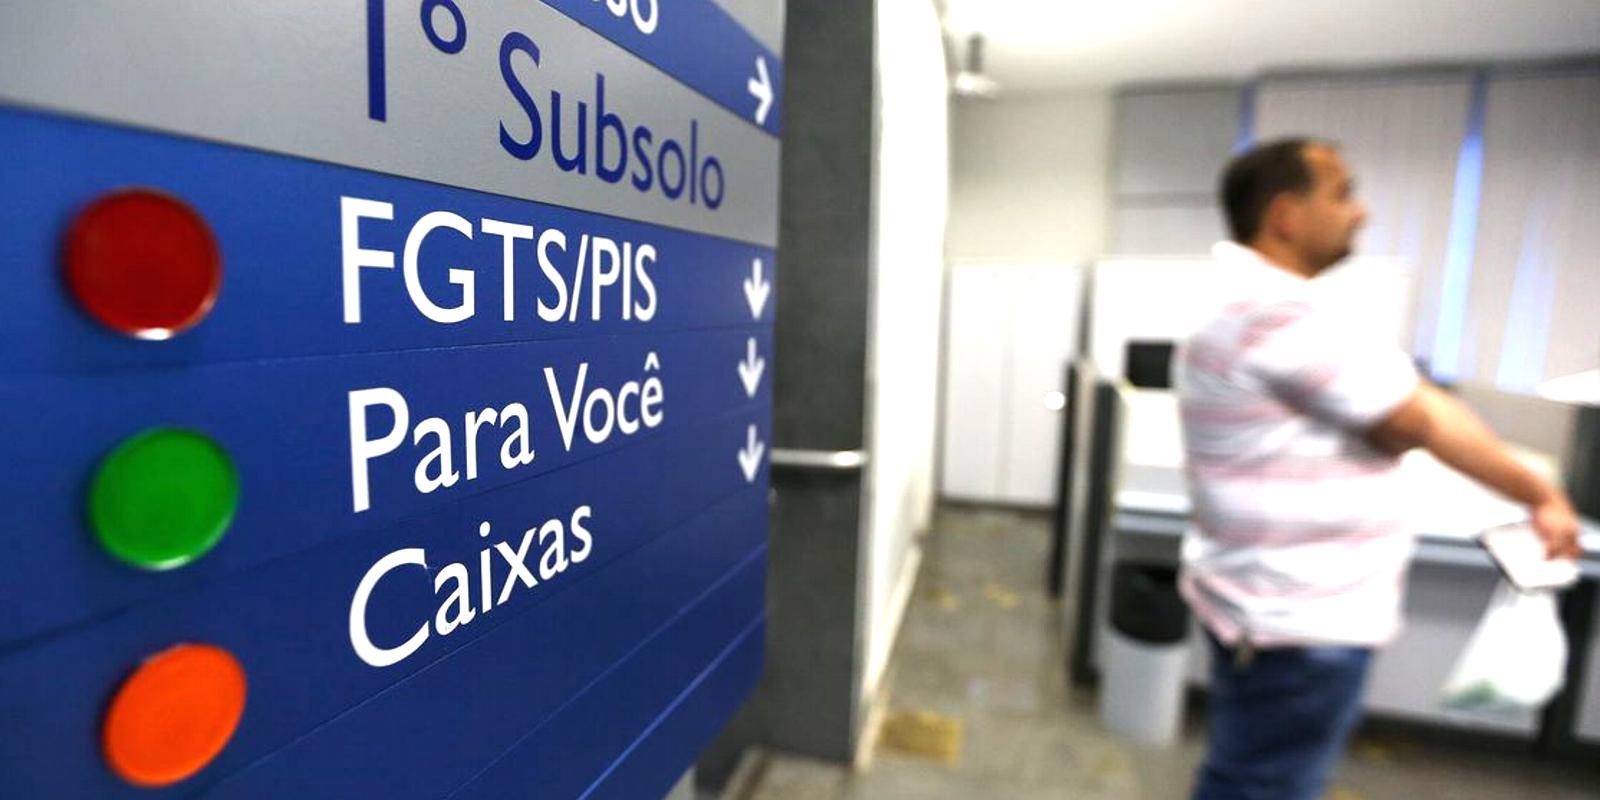 Caixa e Banco do Brasil iniciam pagamento de cotas do PIS/Pasep